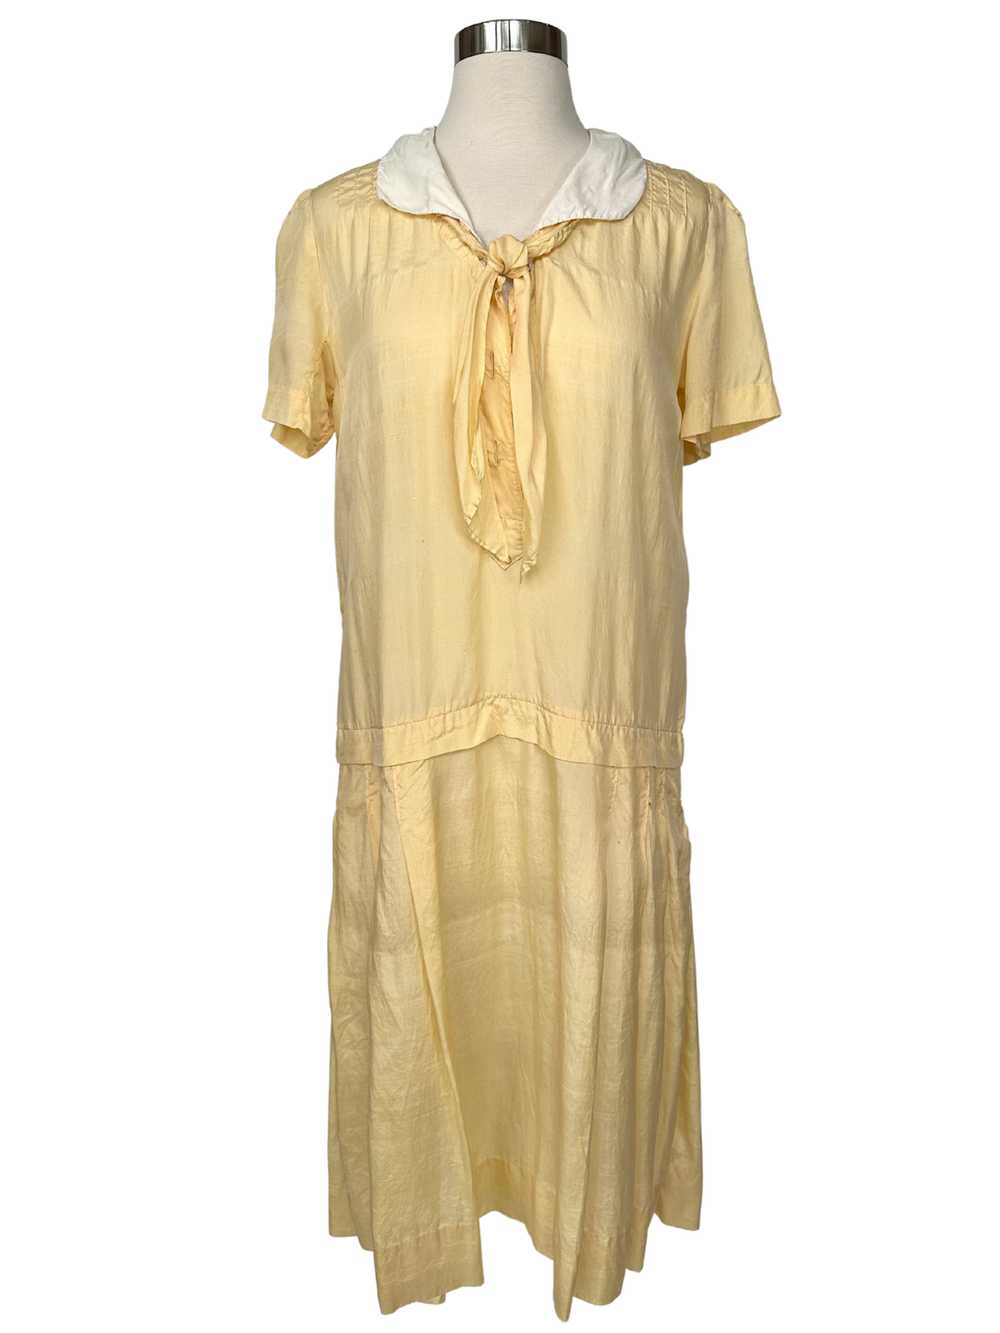 Vintage 1920s Yellow Cotton Flapper Dress - M - image 1